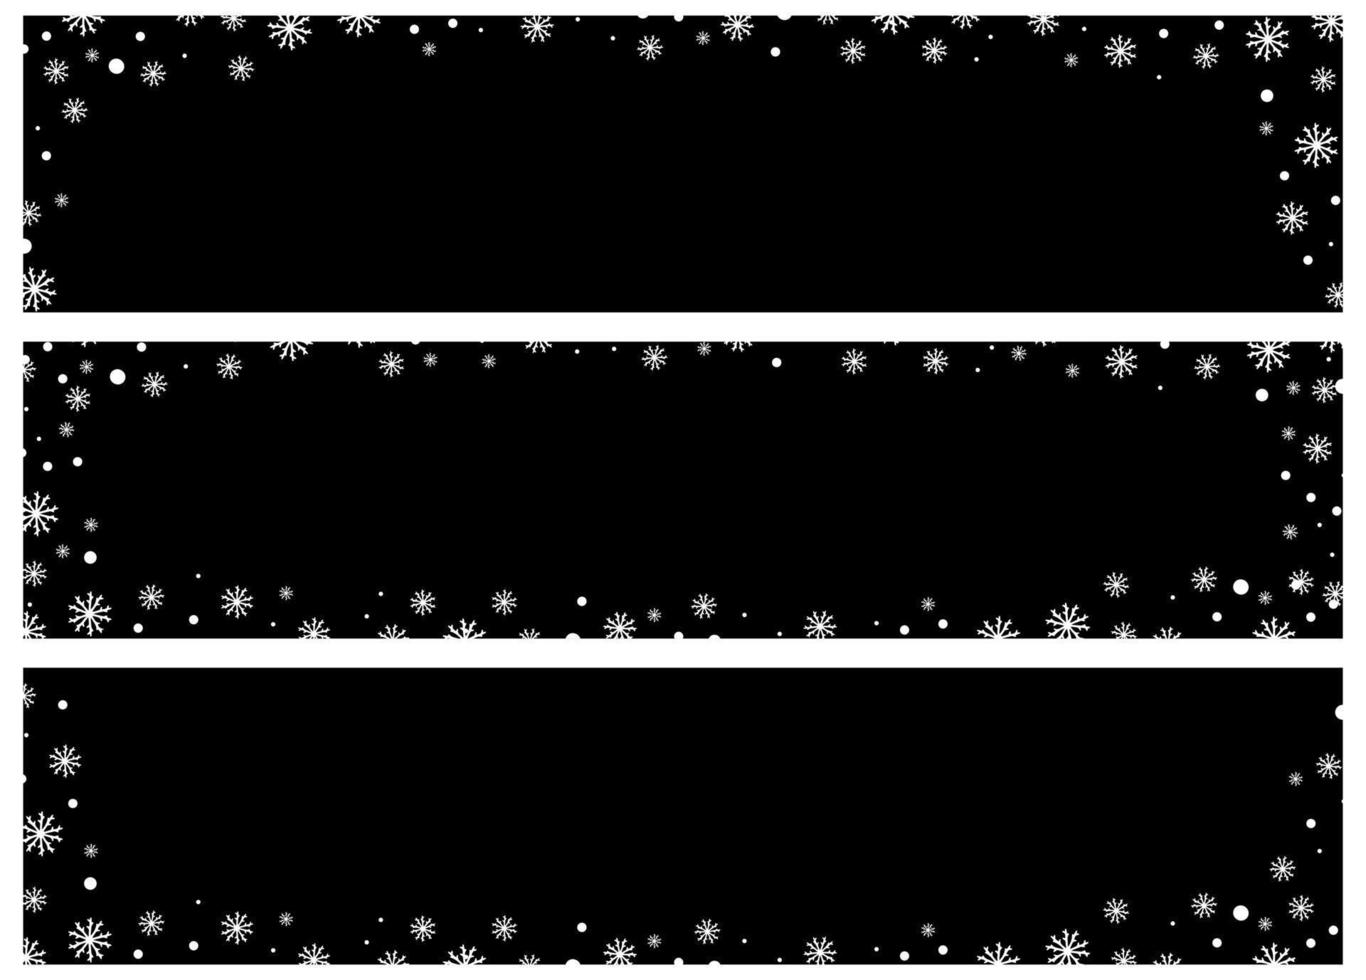 conjunto de banners de inverno com fundo preto e flocos de neve brancos vetor